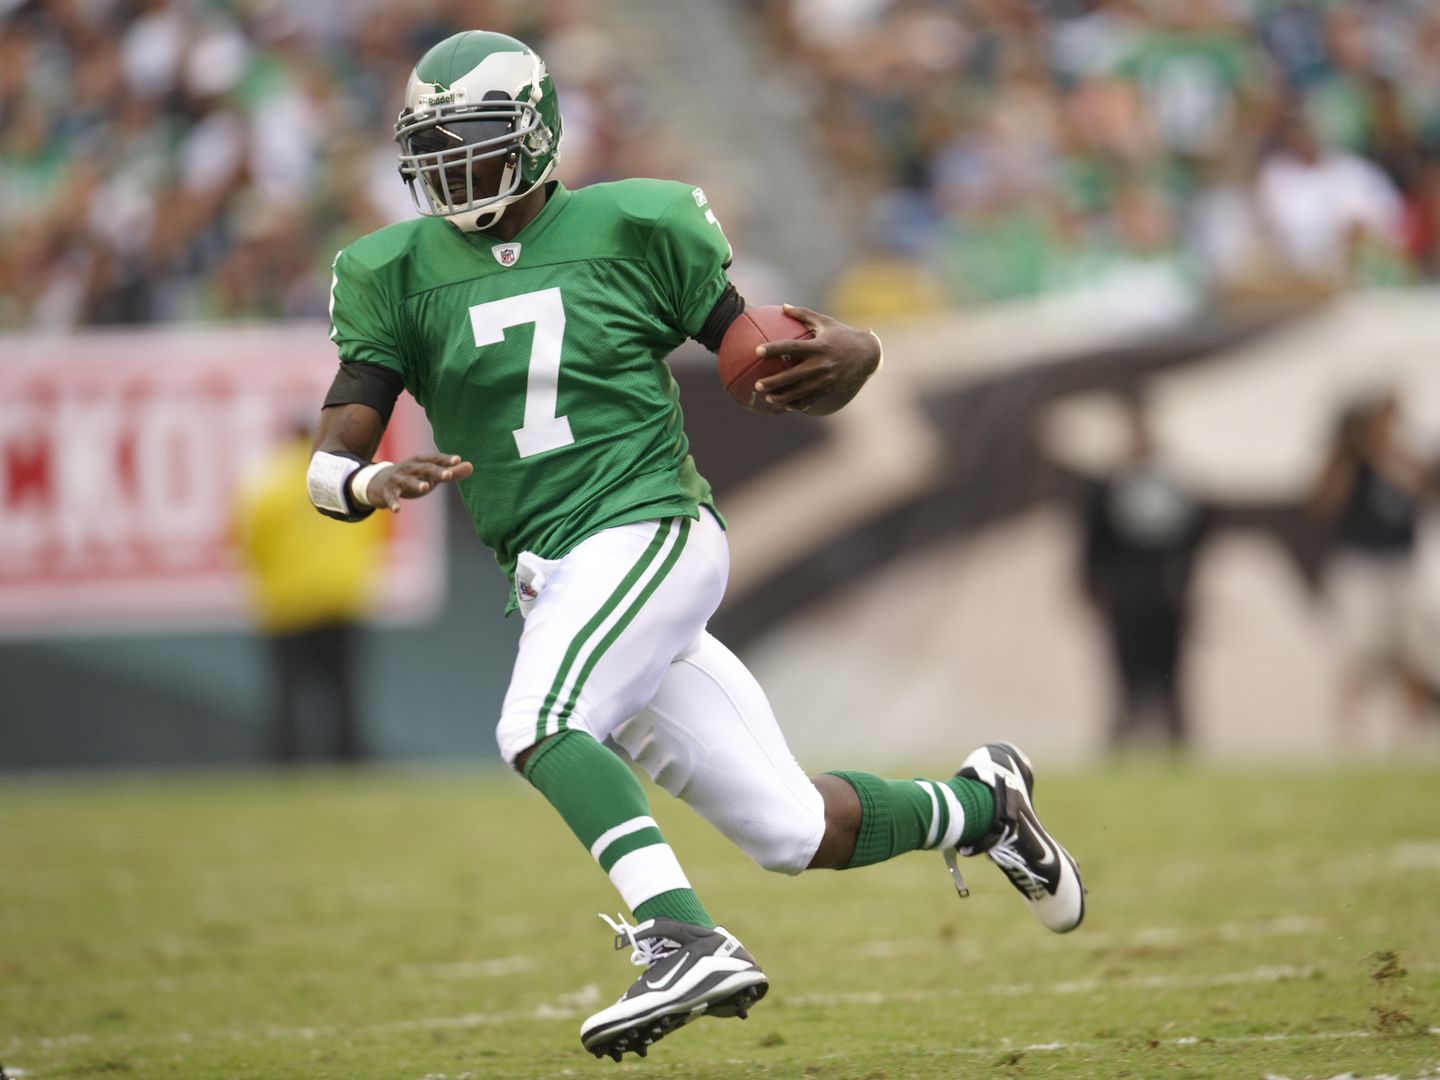 Philadelphia Eagles will bring back Kelly green jerseys, helmets